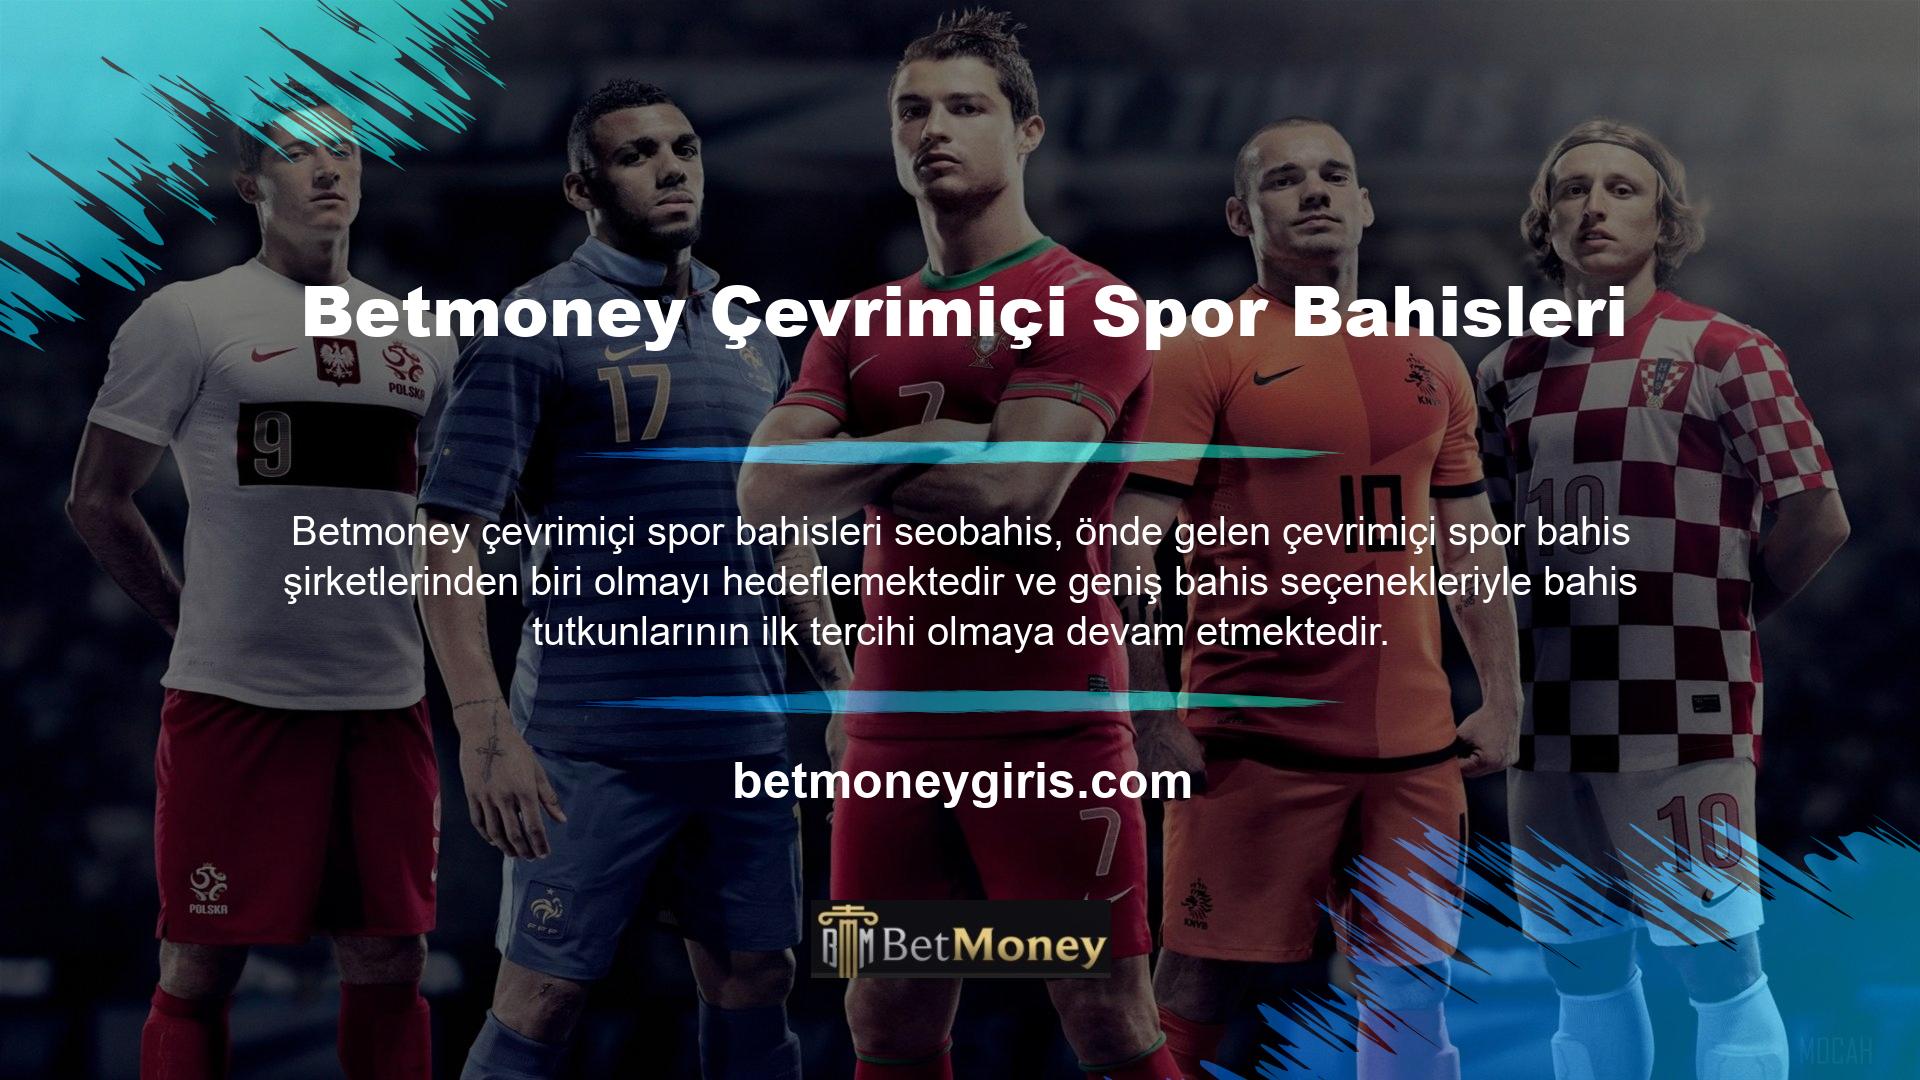 Betmoney Online Spor Bahisleri Türkiye'de spor bahislerine büyük bir ilgi var, dolayısıyla canlı bahis sitelerinin oldukça geniş bir spor bahis ağına sahip olmasını bekleyebilirsiniz